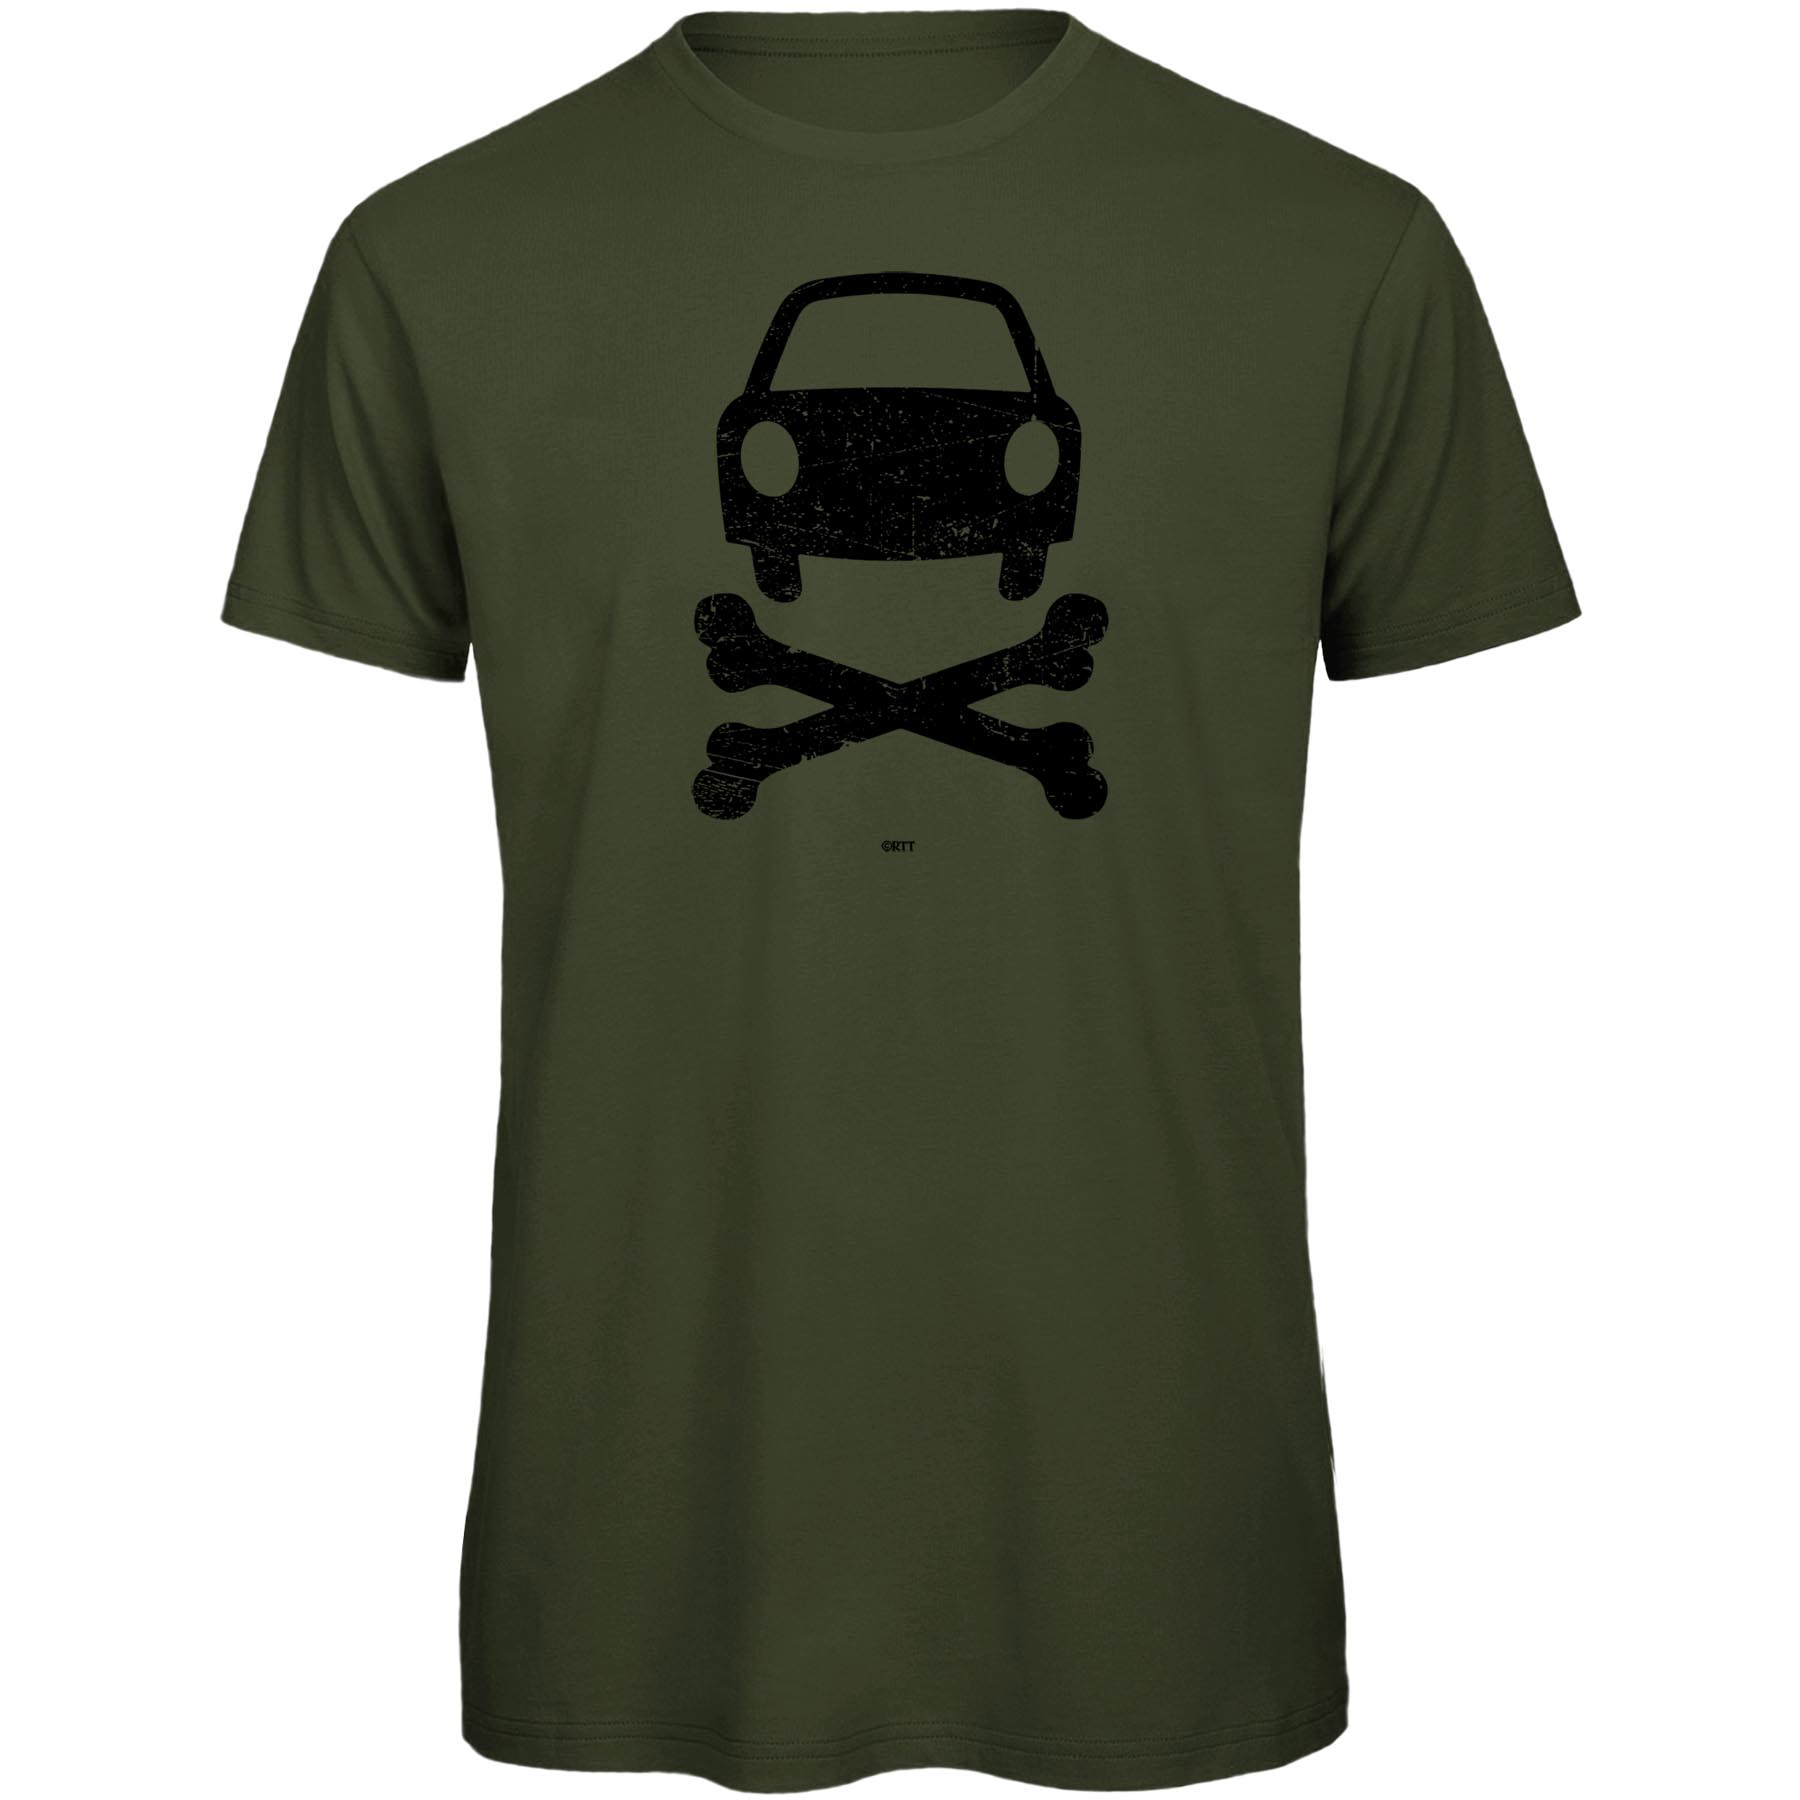 Produktbild von RTTshirts No Car Fahrrad T-Shirt Herren - khaki